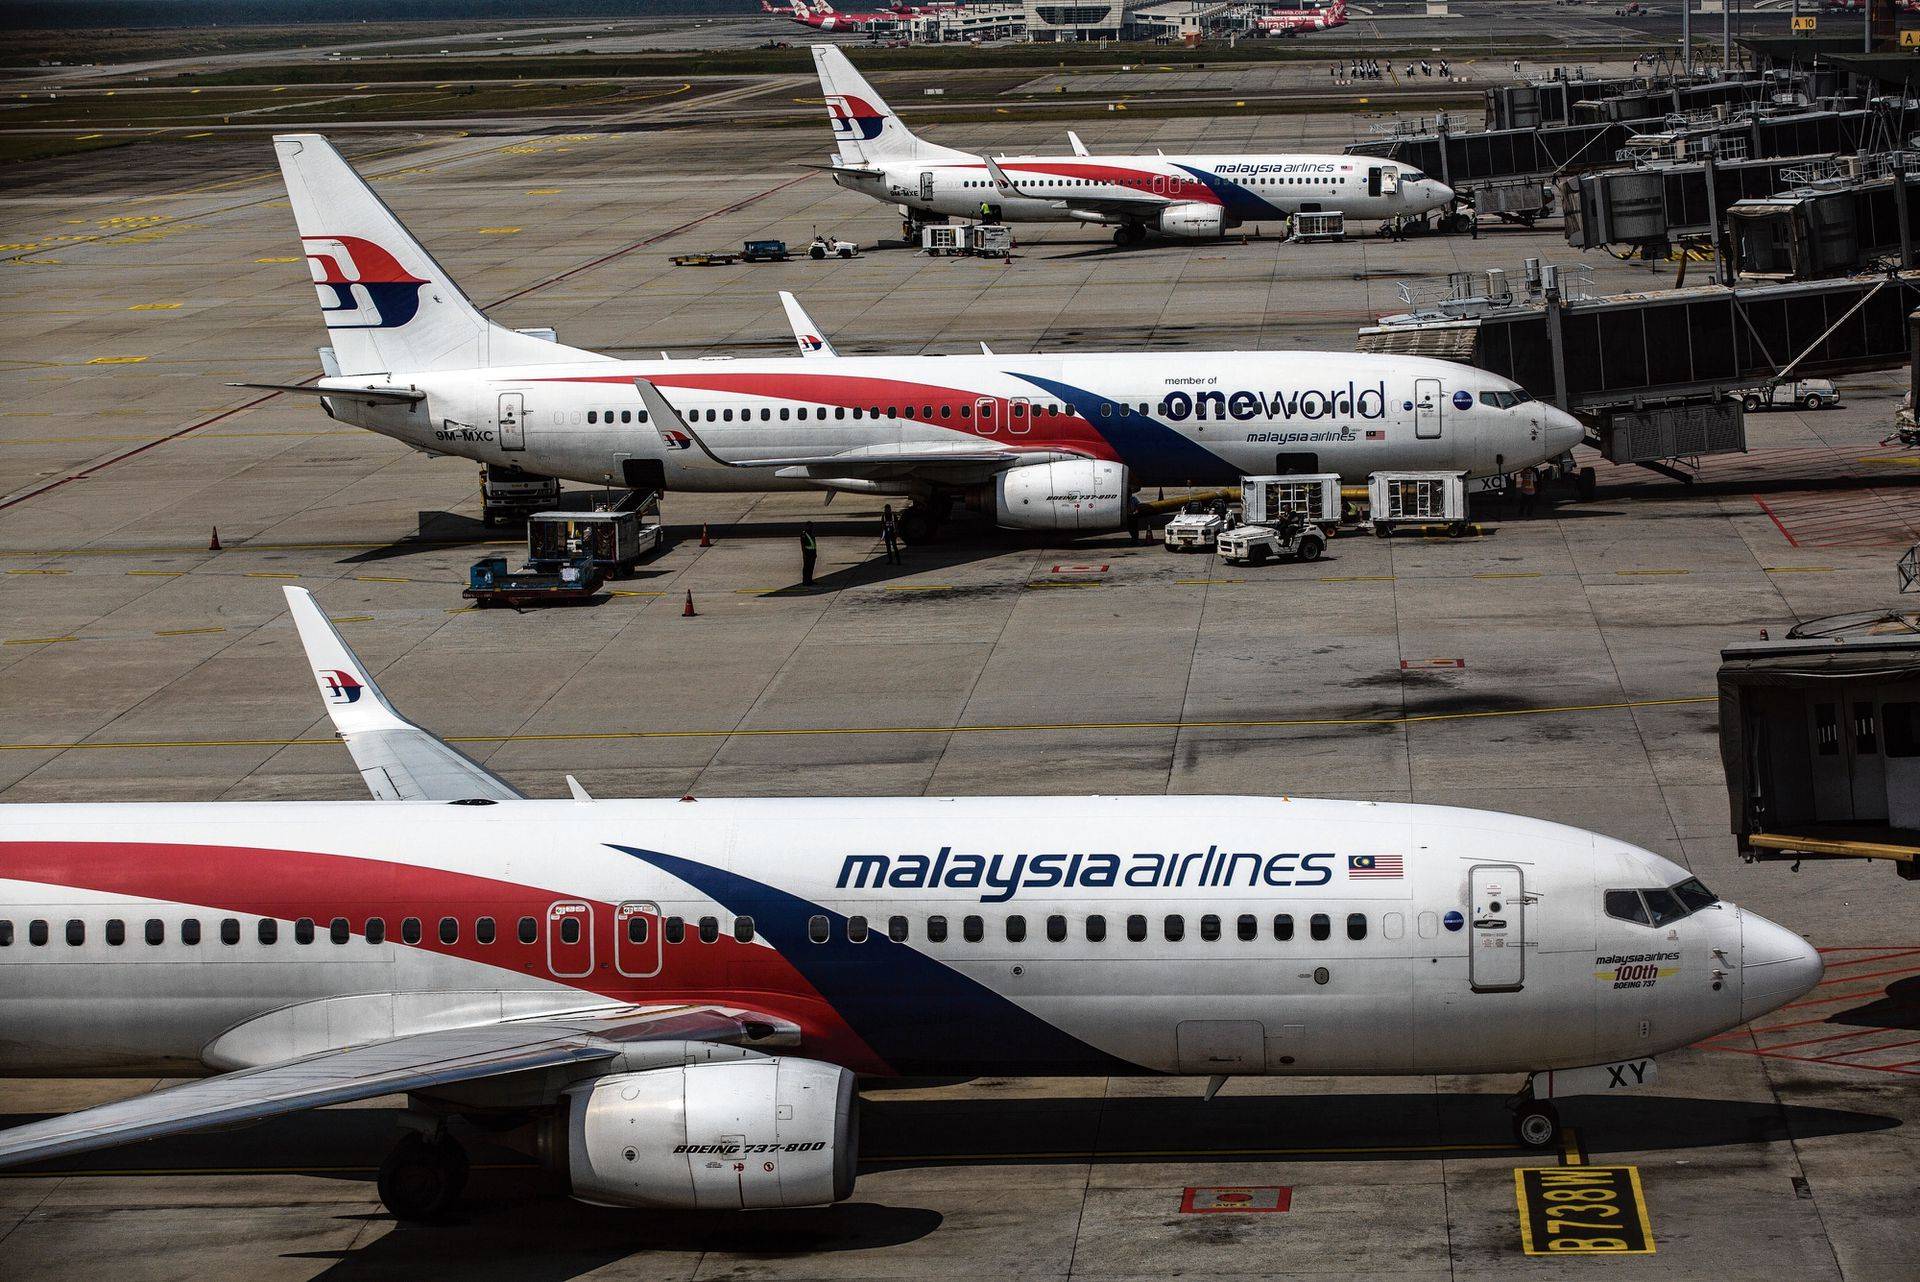 Малайзия эйрлайнс. 370 Малайзия Эйрлайнс. Авиакомпания Malaysia Airlines. Mh370 авиакомпании «Malaysia Airlines». Авиакомпания в Малайзии Малайзия Эйрлайнс Боинг 777.